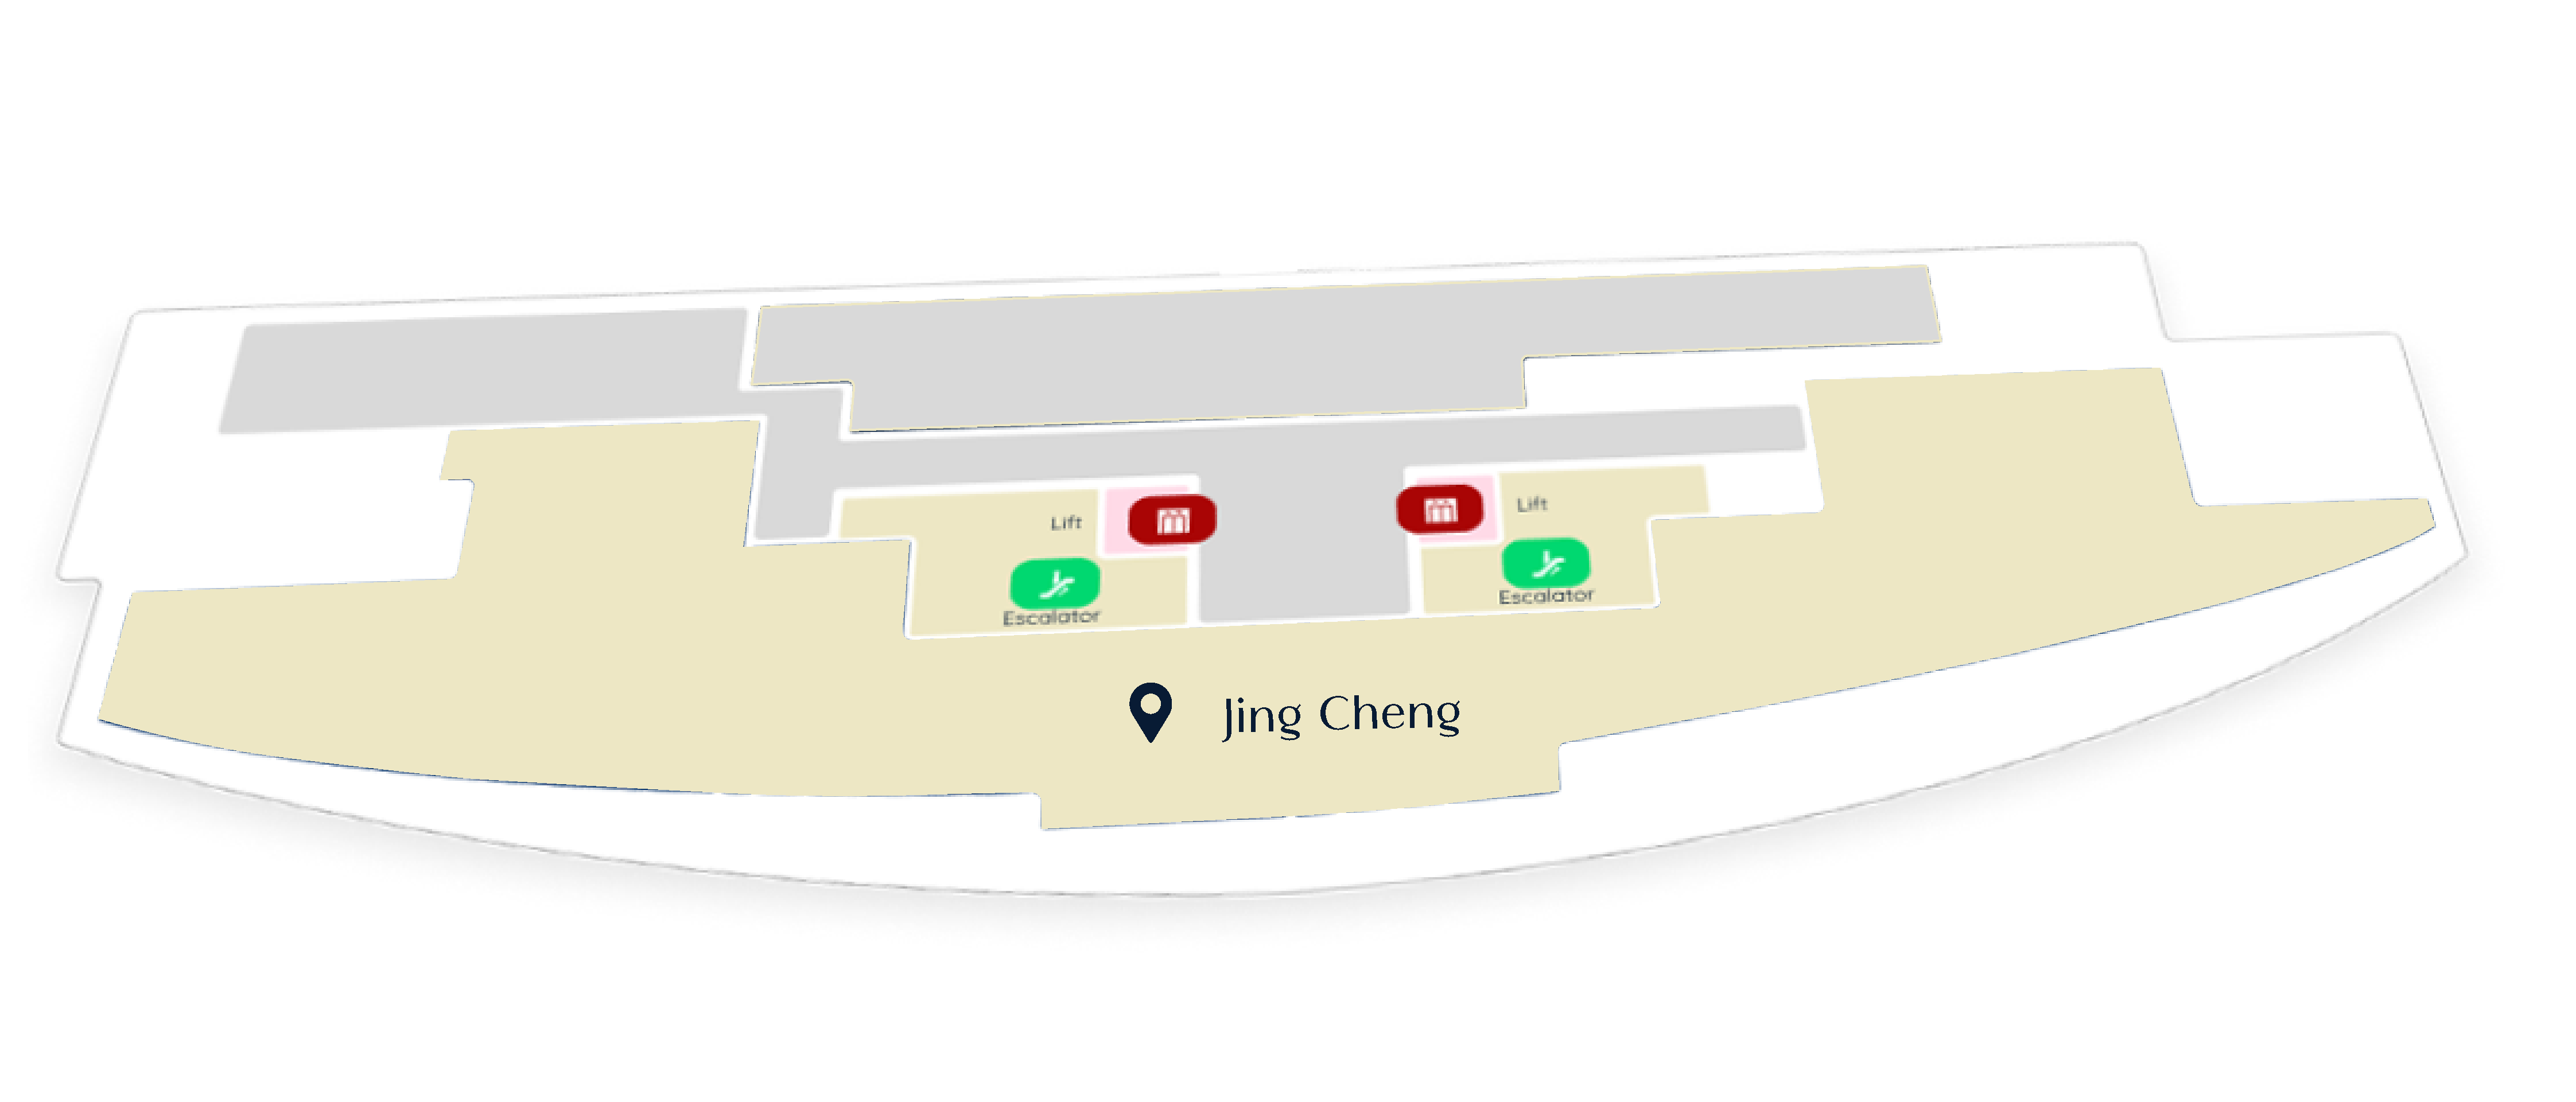 Jing Cheng Directory